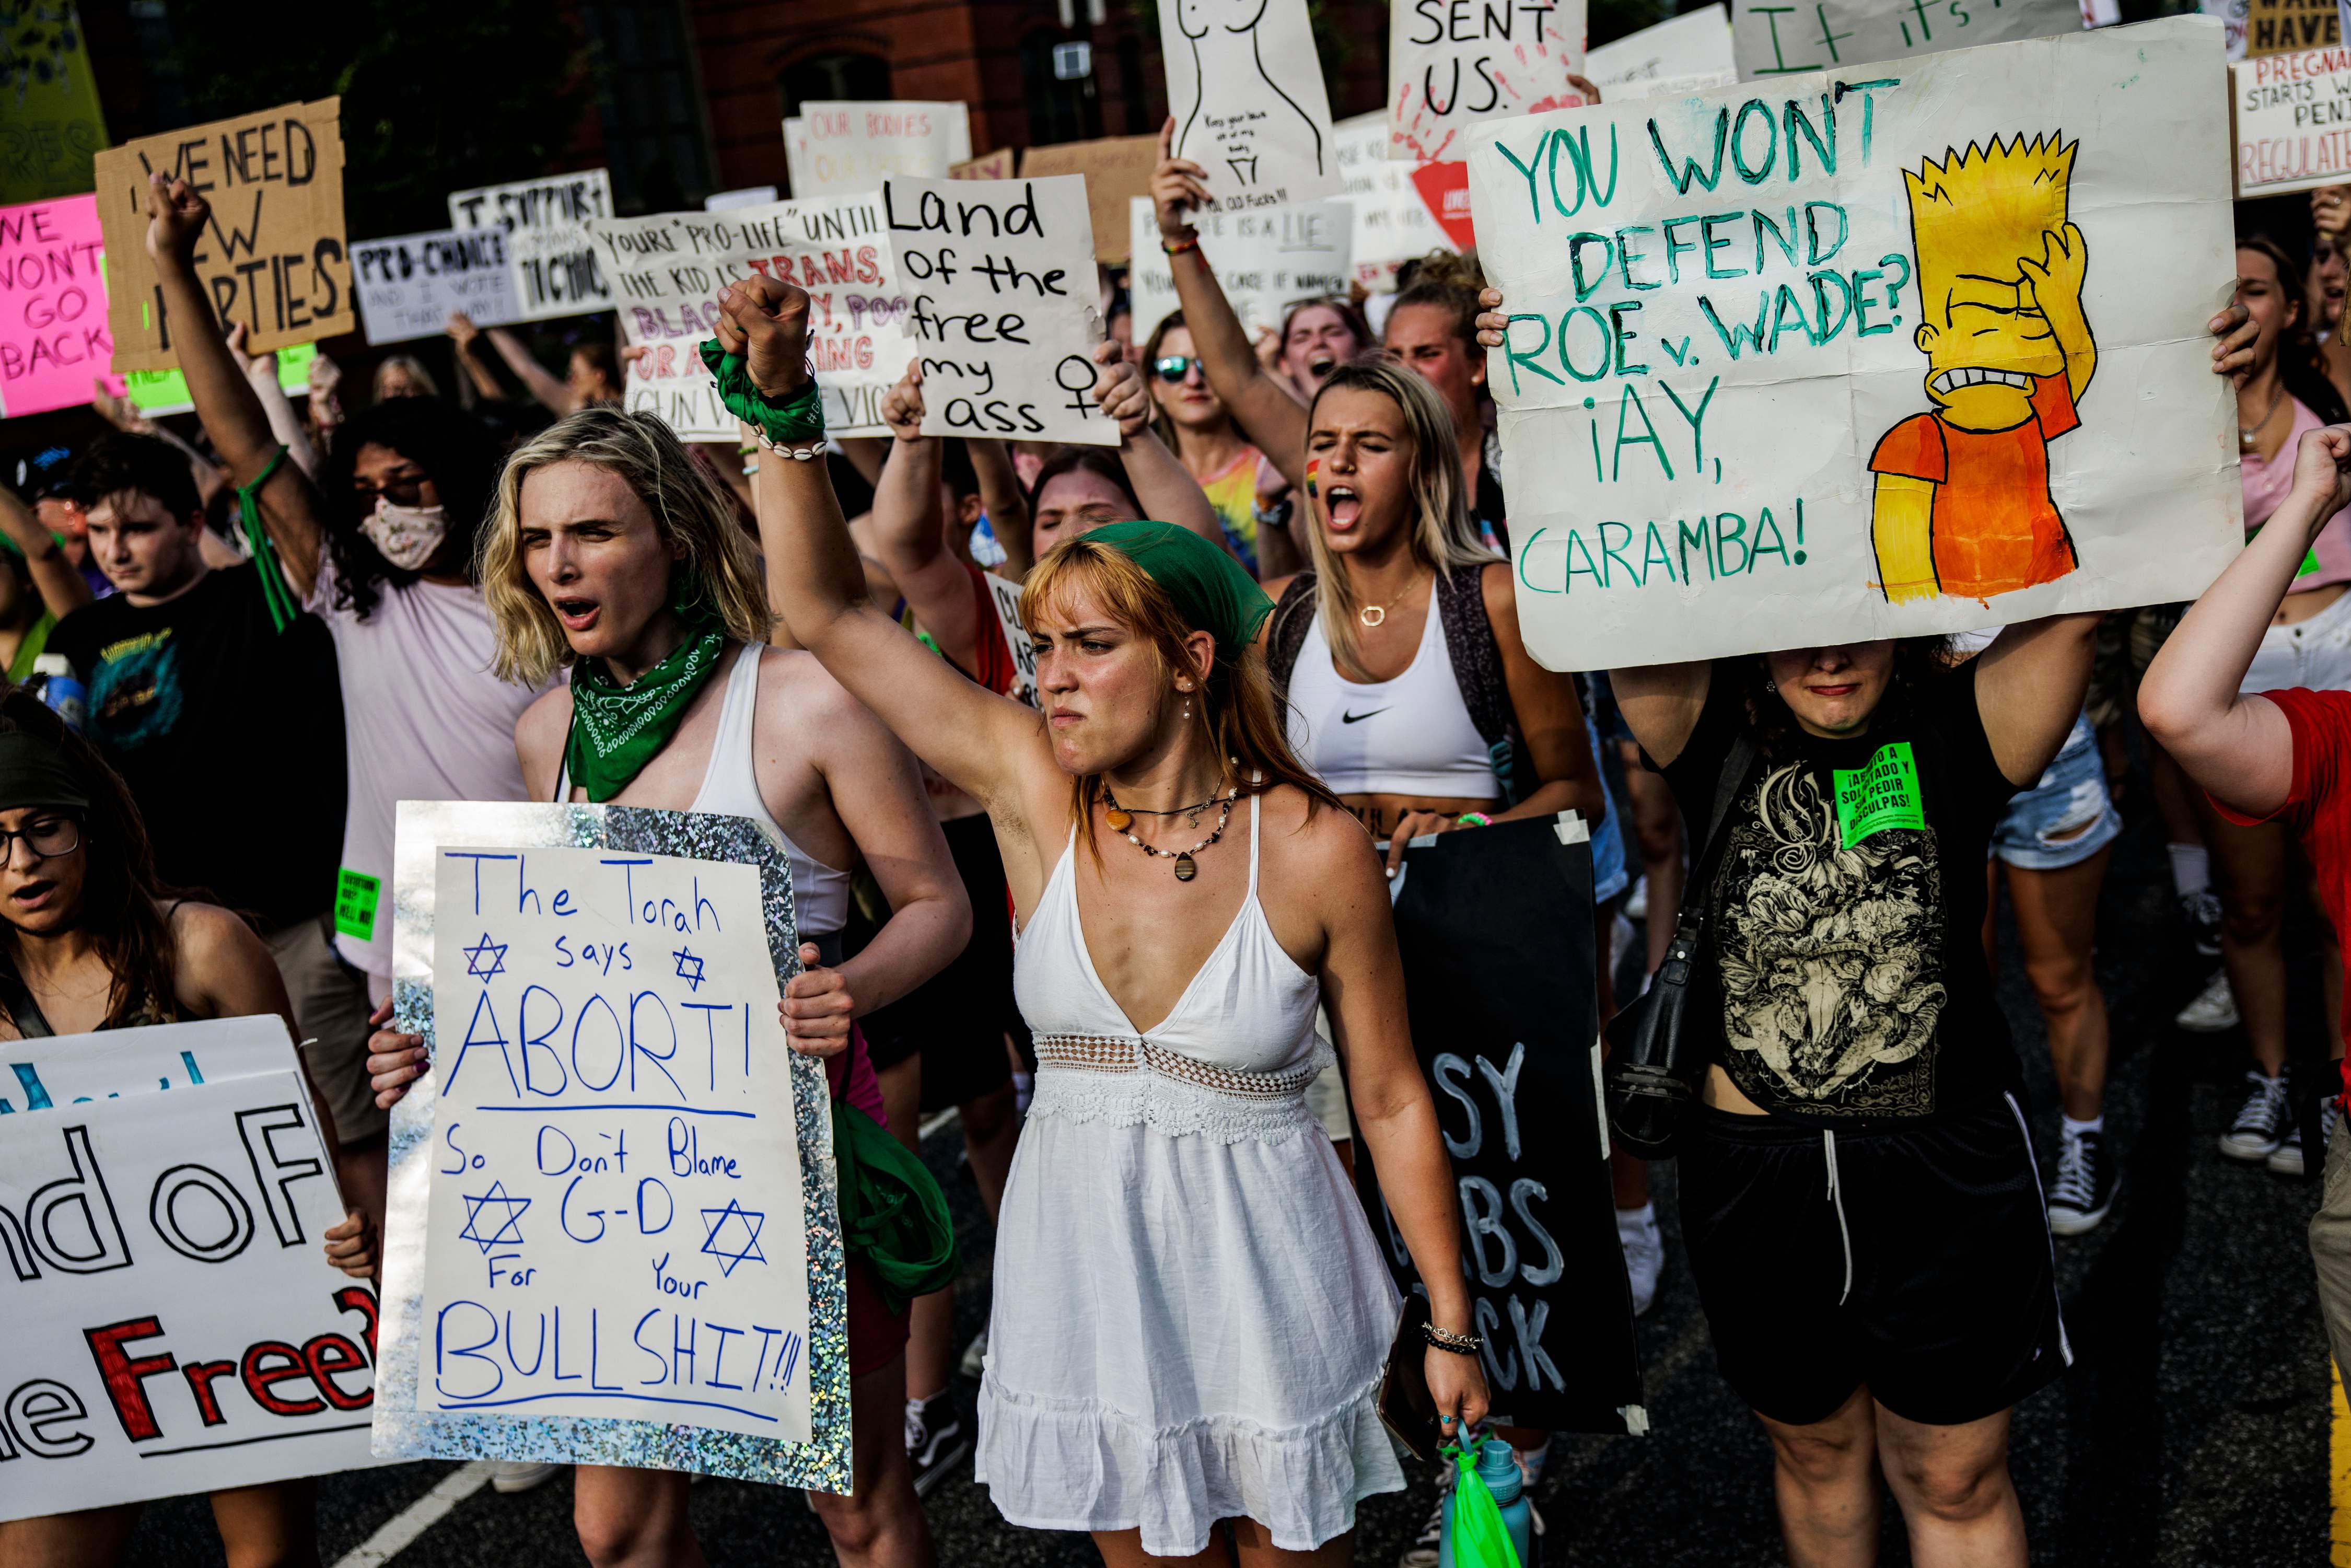 미국 연방 대법원이 낙태 합법화 판결을 폐기한 지 이틀 만인 지난 26일(현지시각) 여성 운동가들이 워싱턴 DC에서 시위를 벌이고 있다. (출처/AFP)